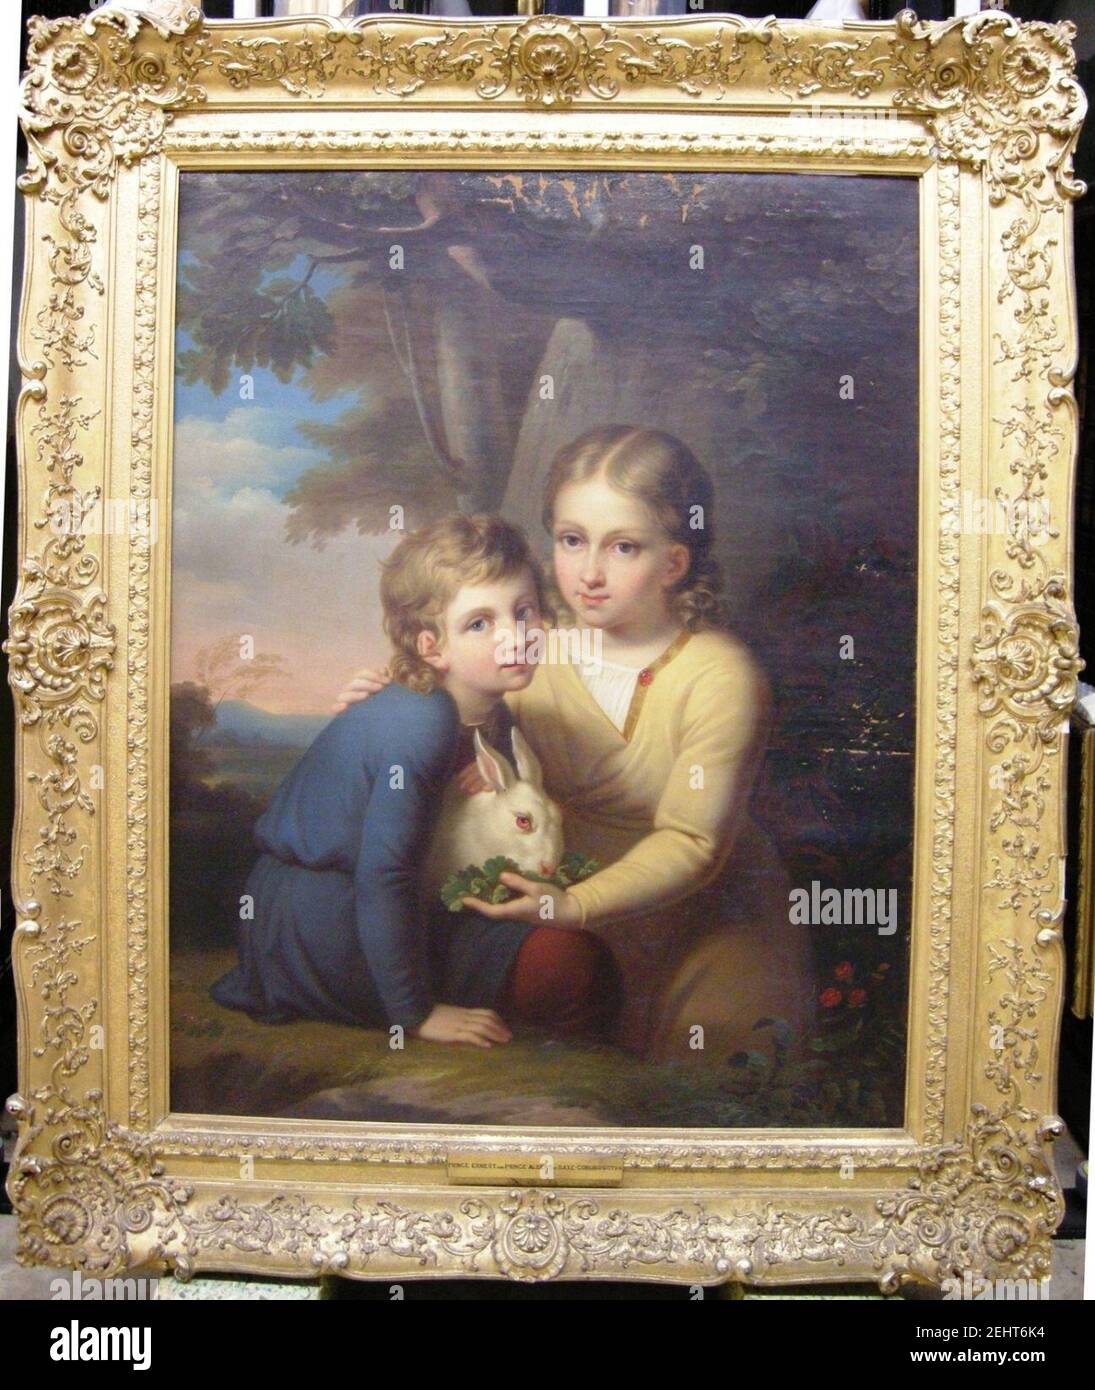 Paul Emil Jacobs (1802-66) - Princes Ernest (1818-1893) et Albert (1819-1861) de Saxe-Coburg-Gotha Banque D'Images